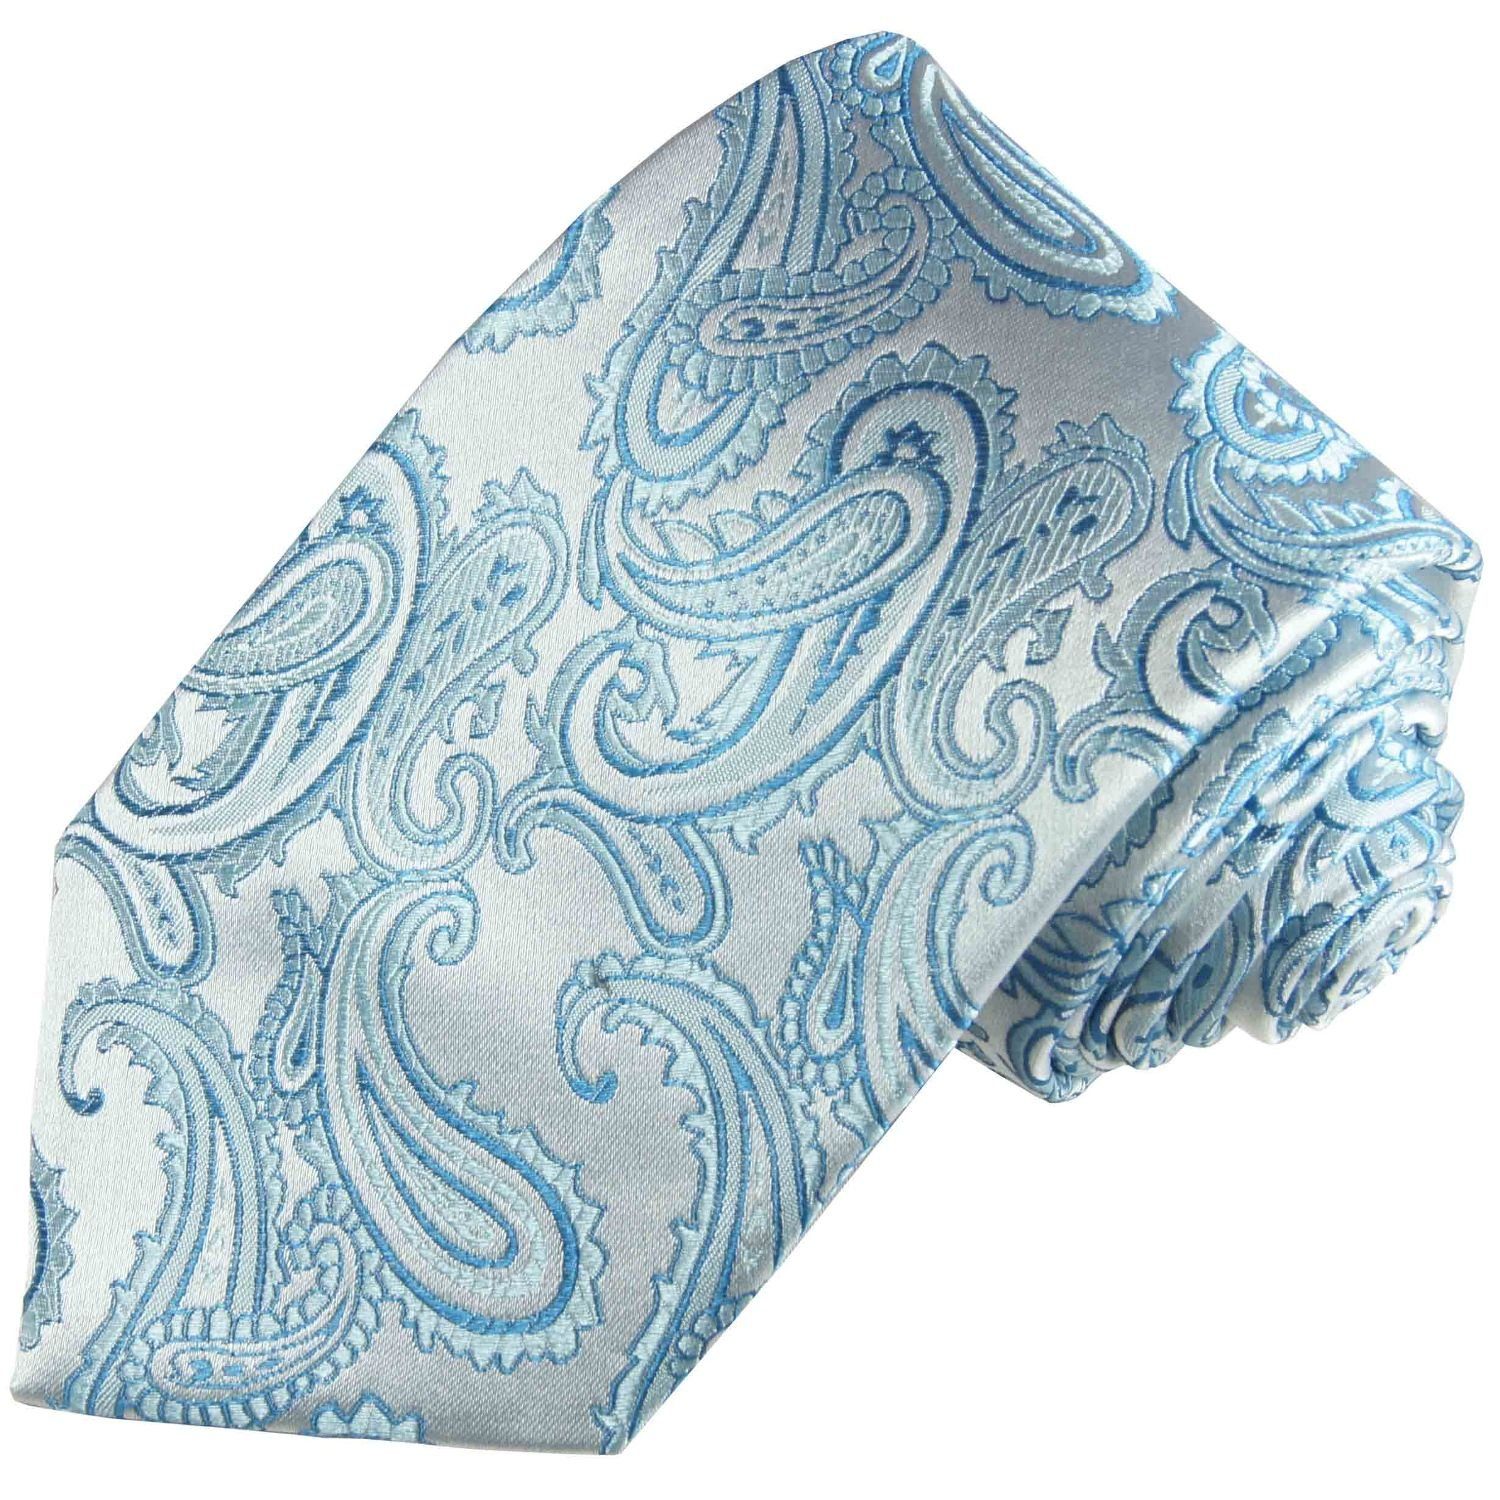 Paul Malone Krawatte Elegante Seidenkrawatte Herren Schlips paisley brokat 100% Seide Schmal (6cm), hellblau silber 399